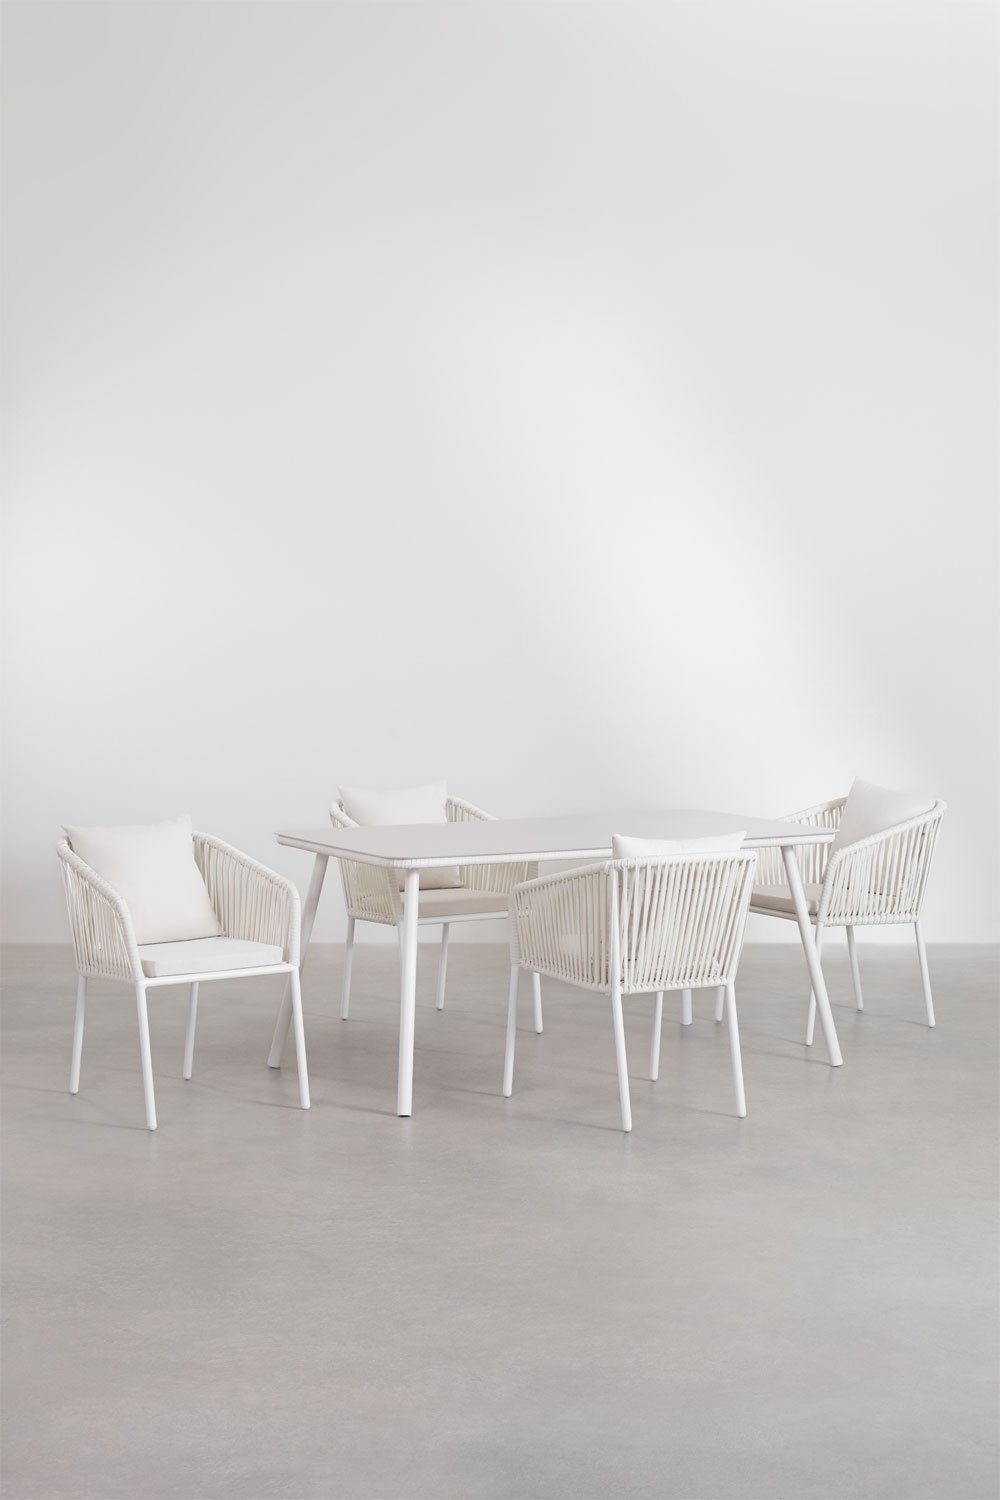 Tuinset met rechthoekige tafel (160x90 cm) en 4 stoelen Arhiza Supreme, galerij beeld 1